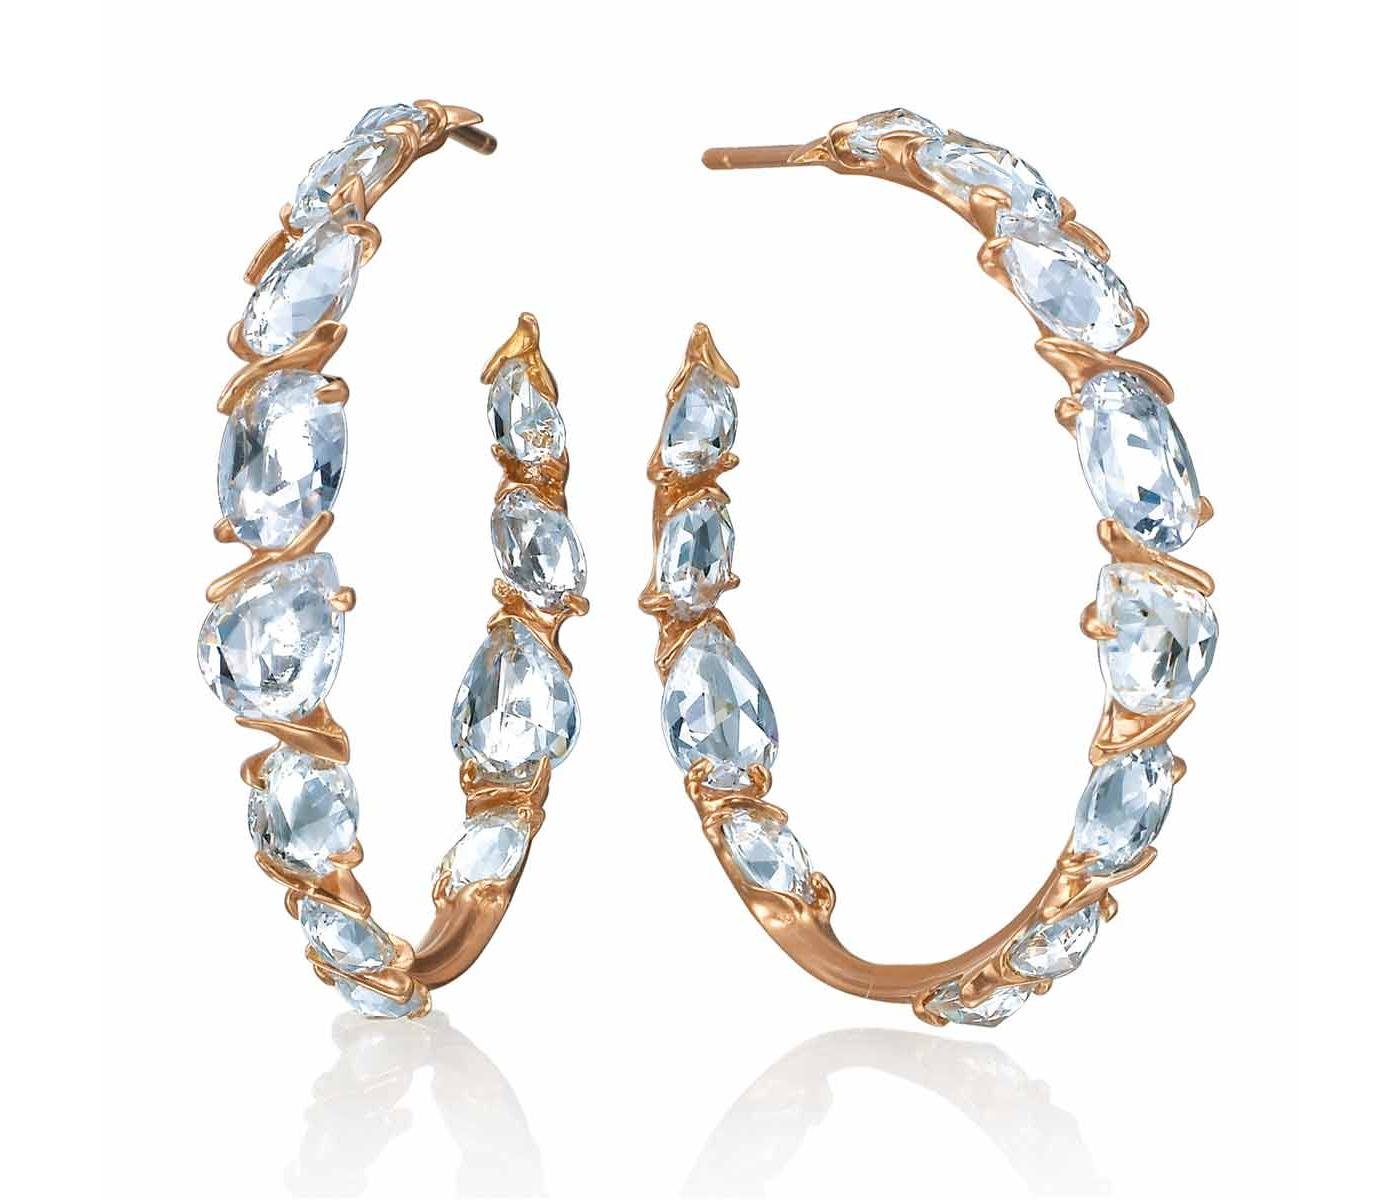 Earrings by Alberian & Aulde